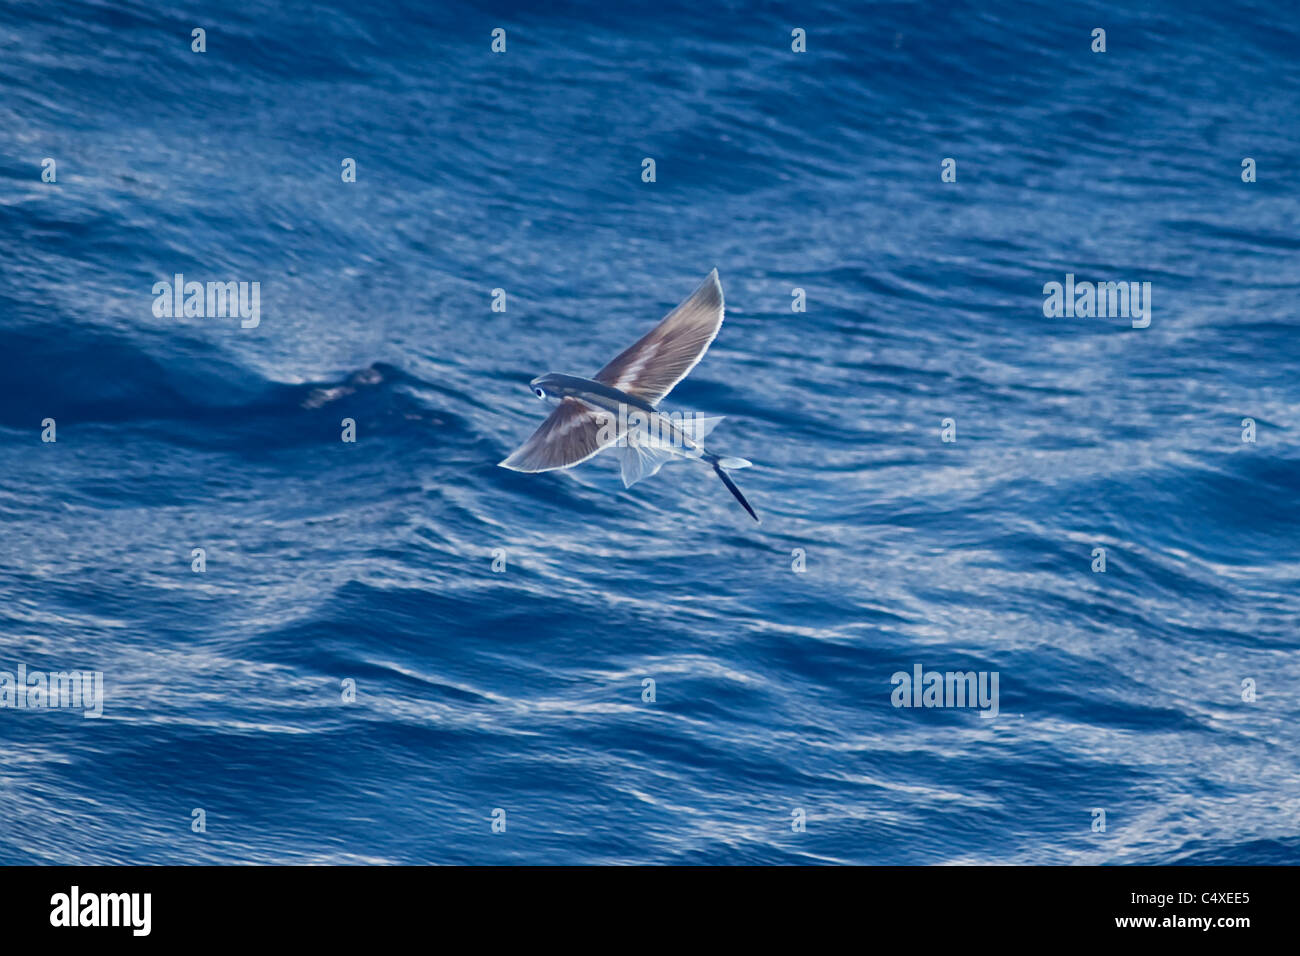 Fliegende Fische-Arten (wissenschaftlicher Name unbekannt) seltene ungewöhnliche Bild, in der Luft. Süd-Atlantik. Stockfoto